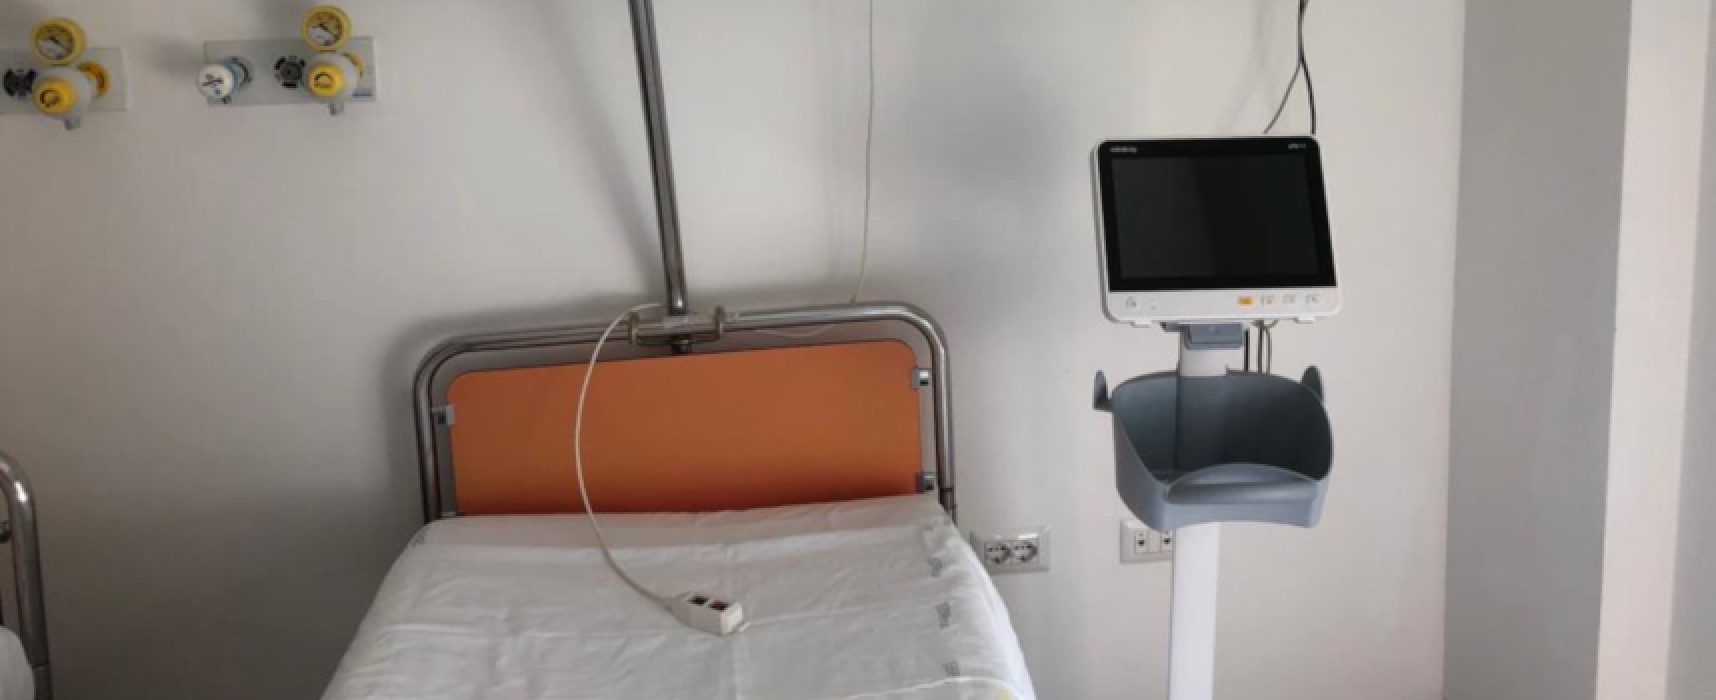 Ospedale Bisceglie, terminati i lavori in Chirurgia: pronti altri 18 posti letto / FOTO e VIDEO